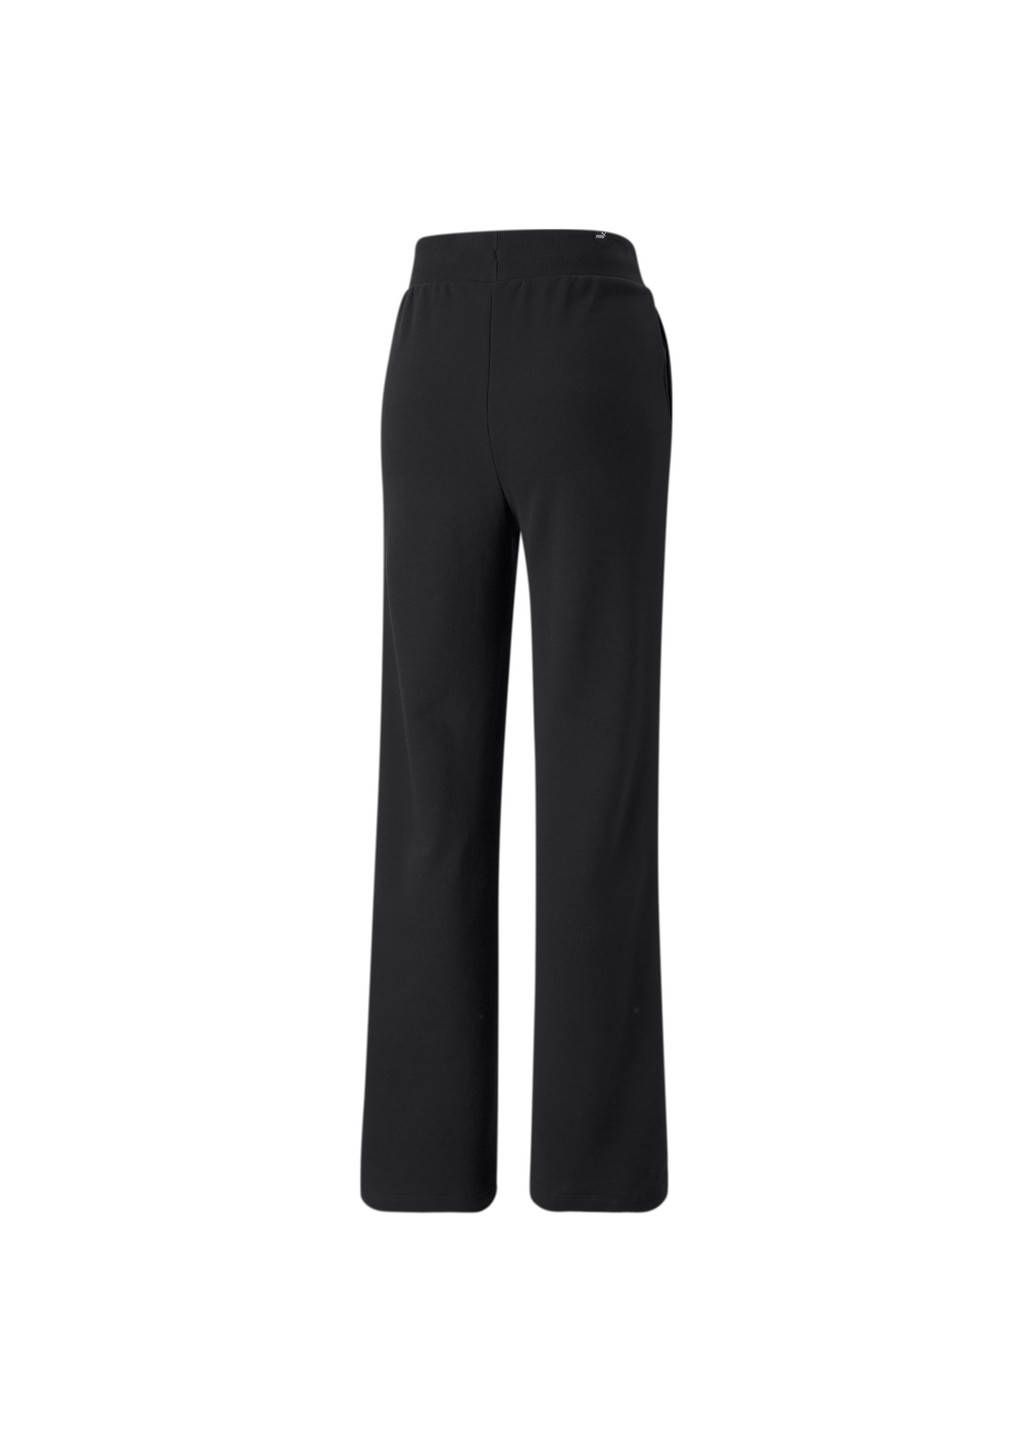 Штани Essentials+ Embroidery Women's Pants Puma однотонні чорні спортивні бавовна, поліестер, еластан